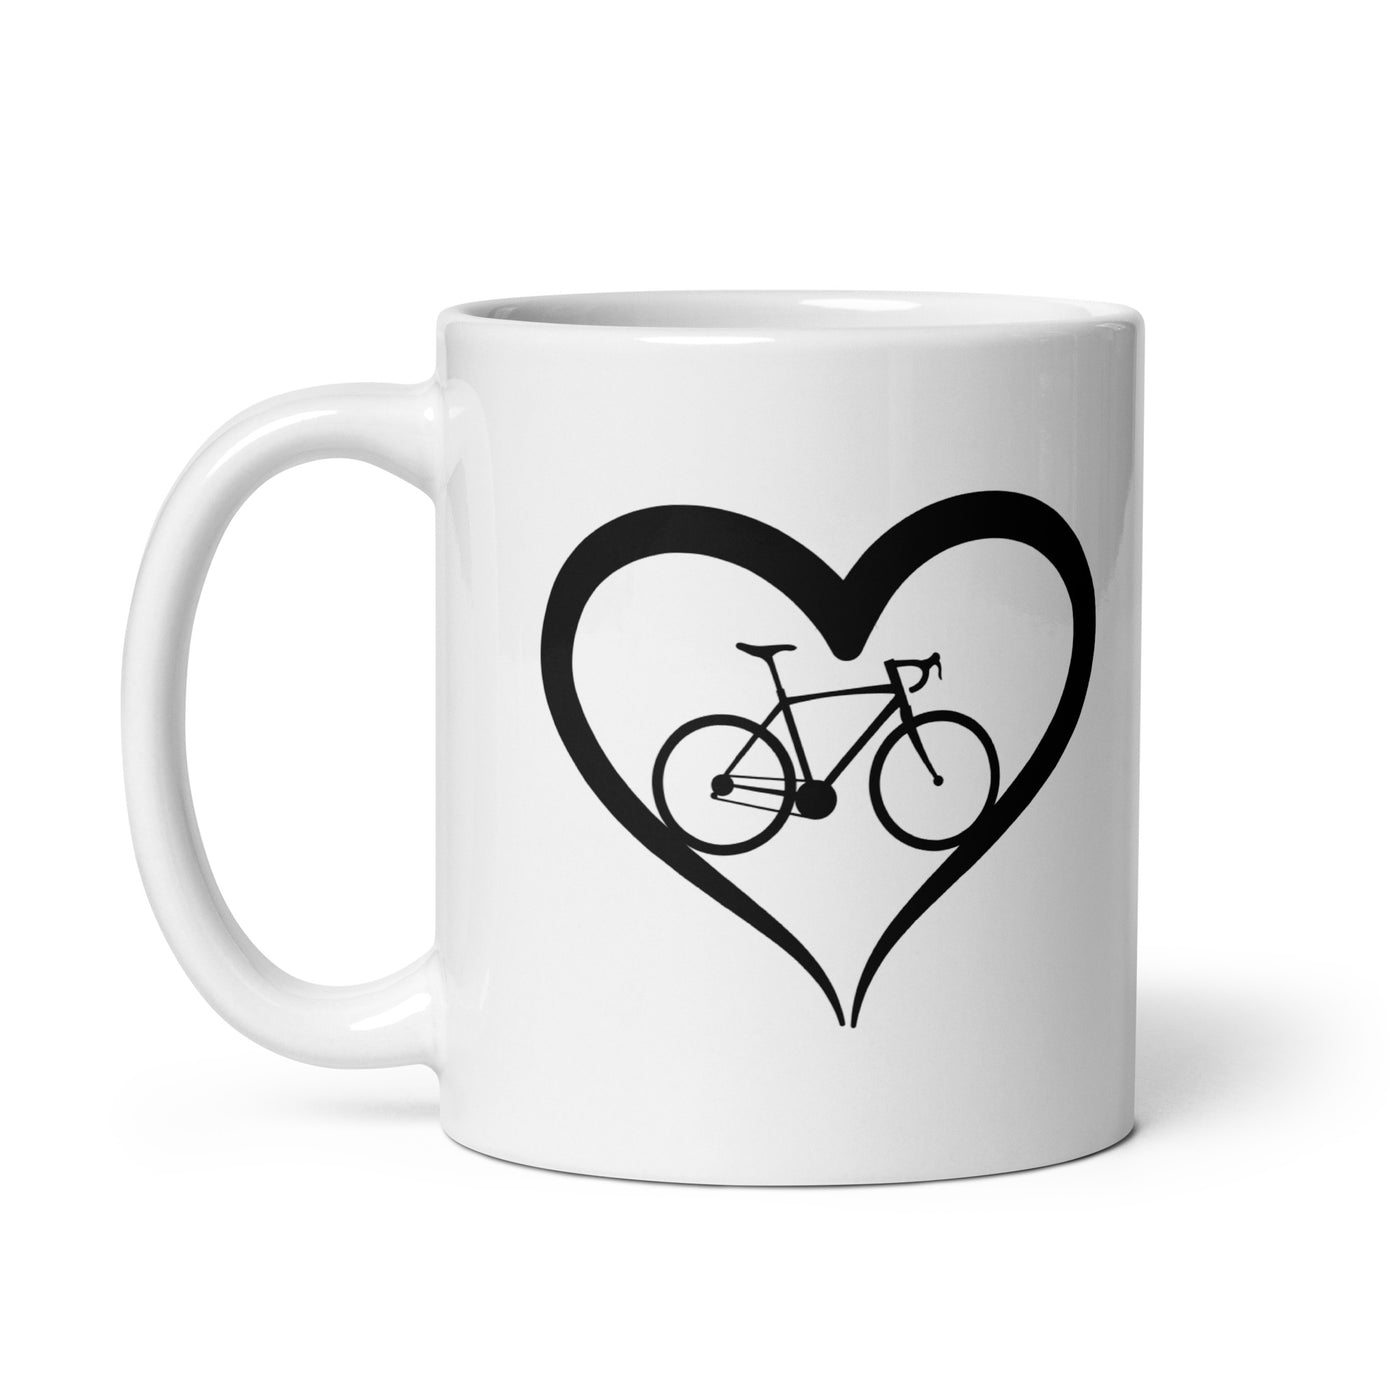 Fahrrad Und Herz - Tasse fahrrad mountainbike 11oz